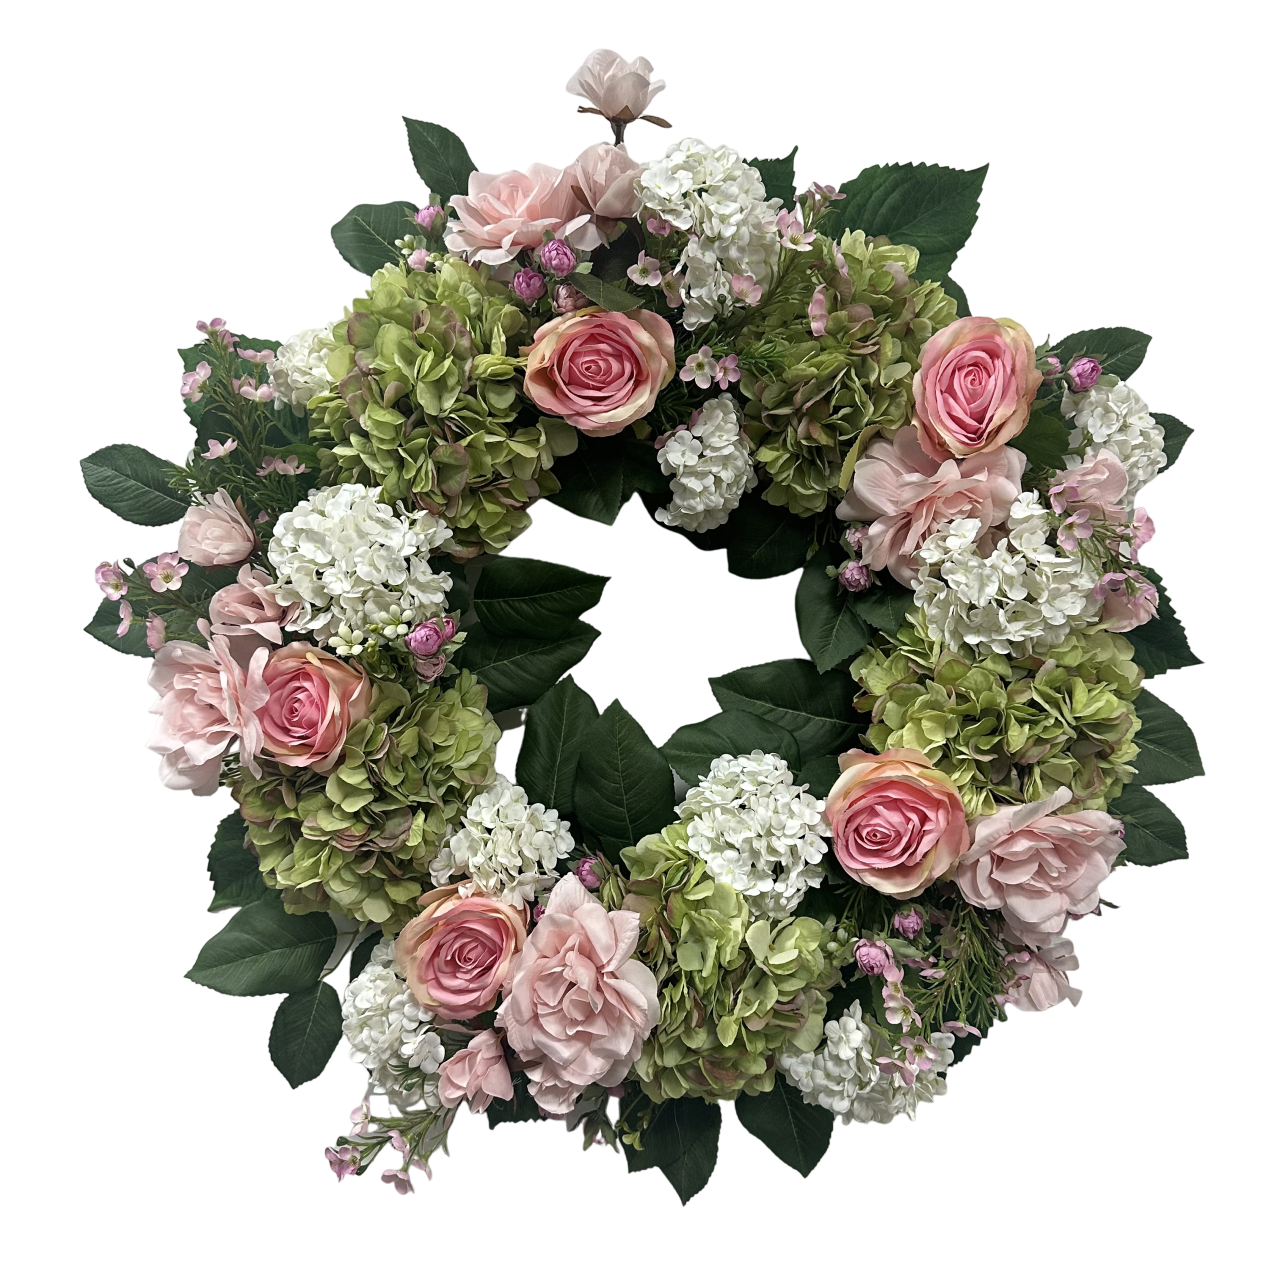 Senmasine hortensia krans pioen kunstmatige kransen bloemen roos dahlia voor voordeur hangende decoratie